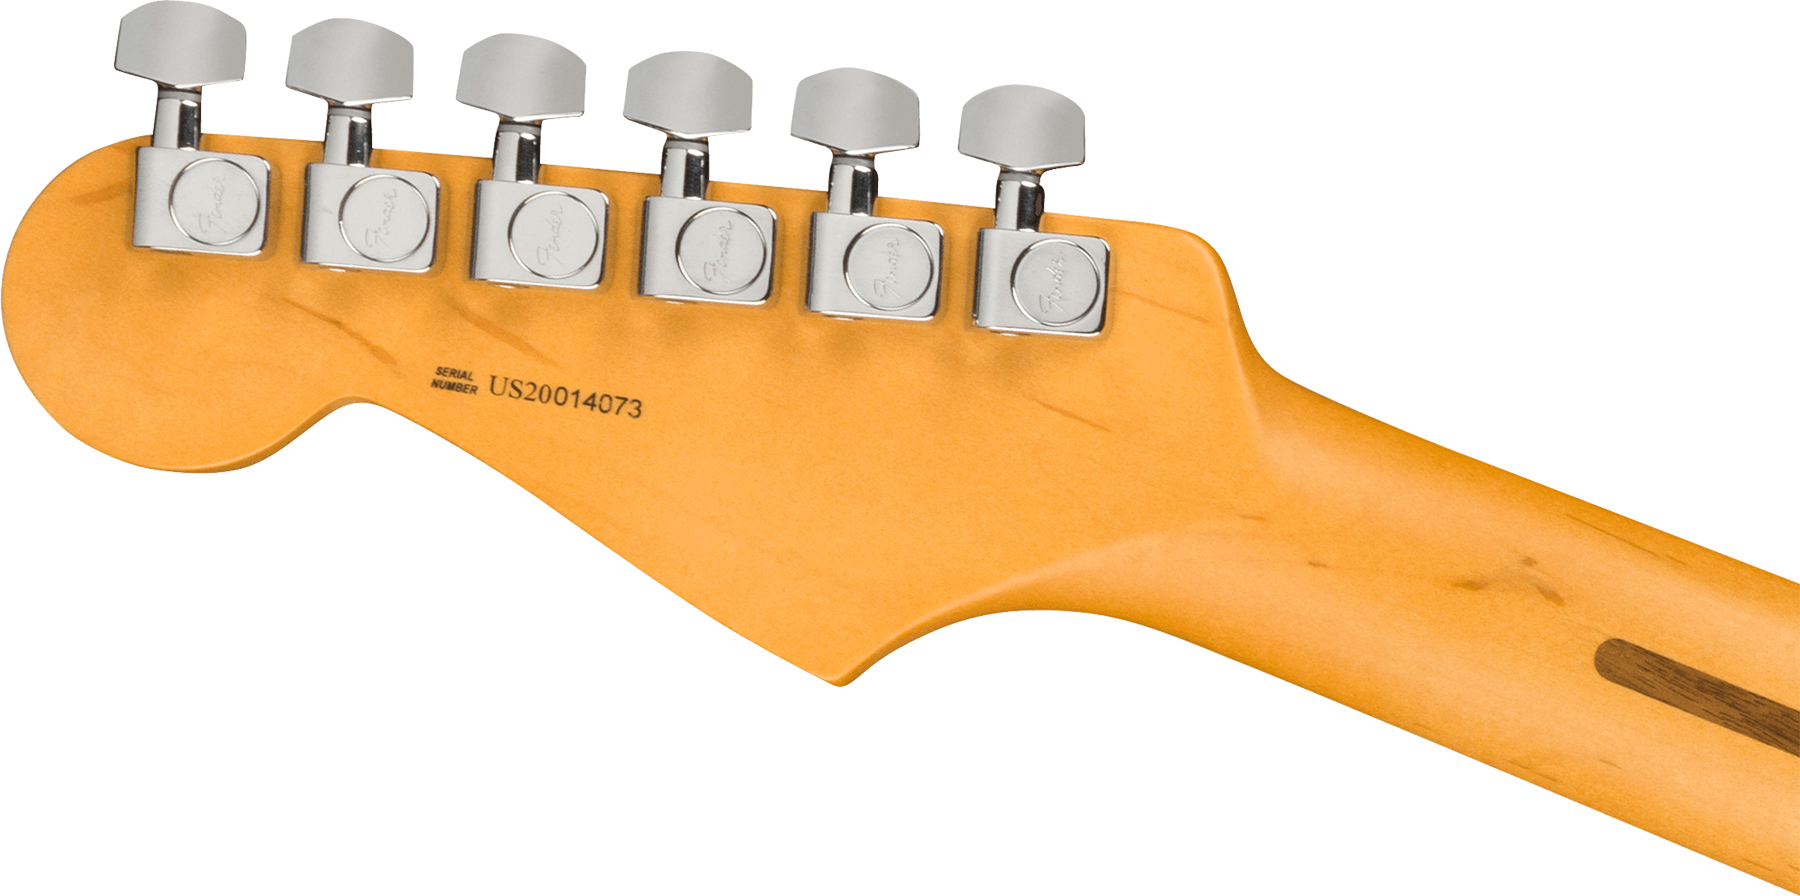 Fender Strat American Professional Ii Usa Rw - Dark Night - Guitarra eléctrica con forma de str. - Variation 3